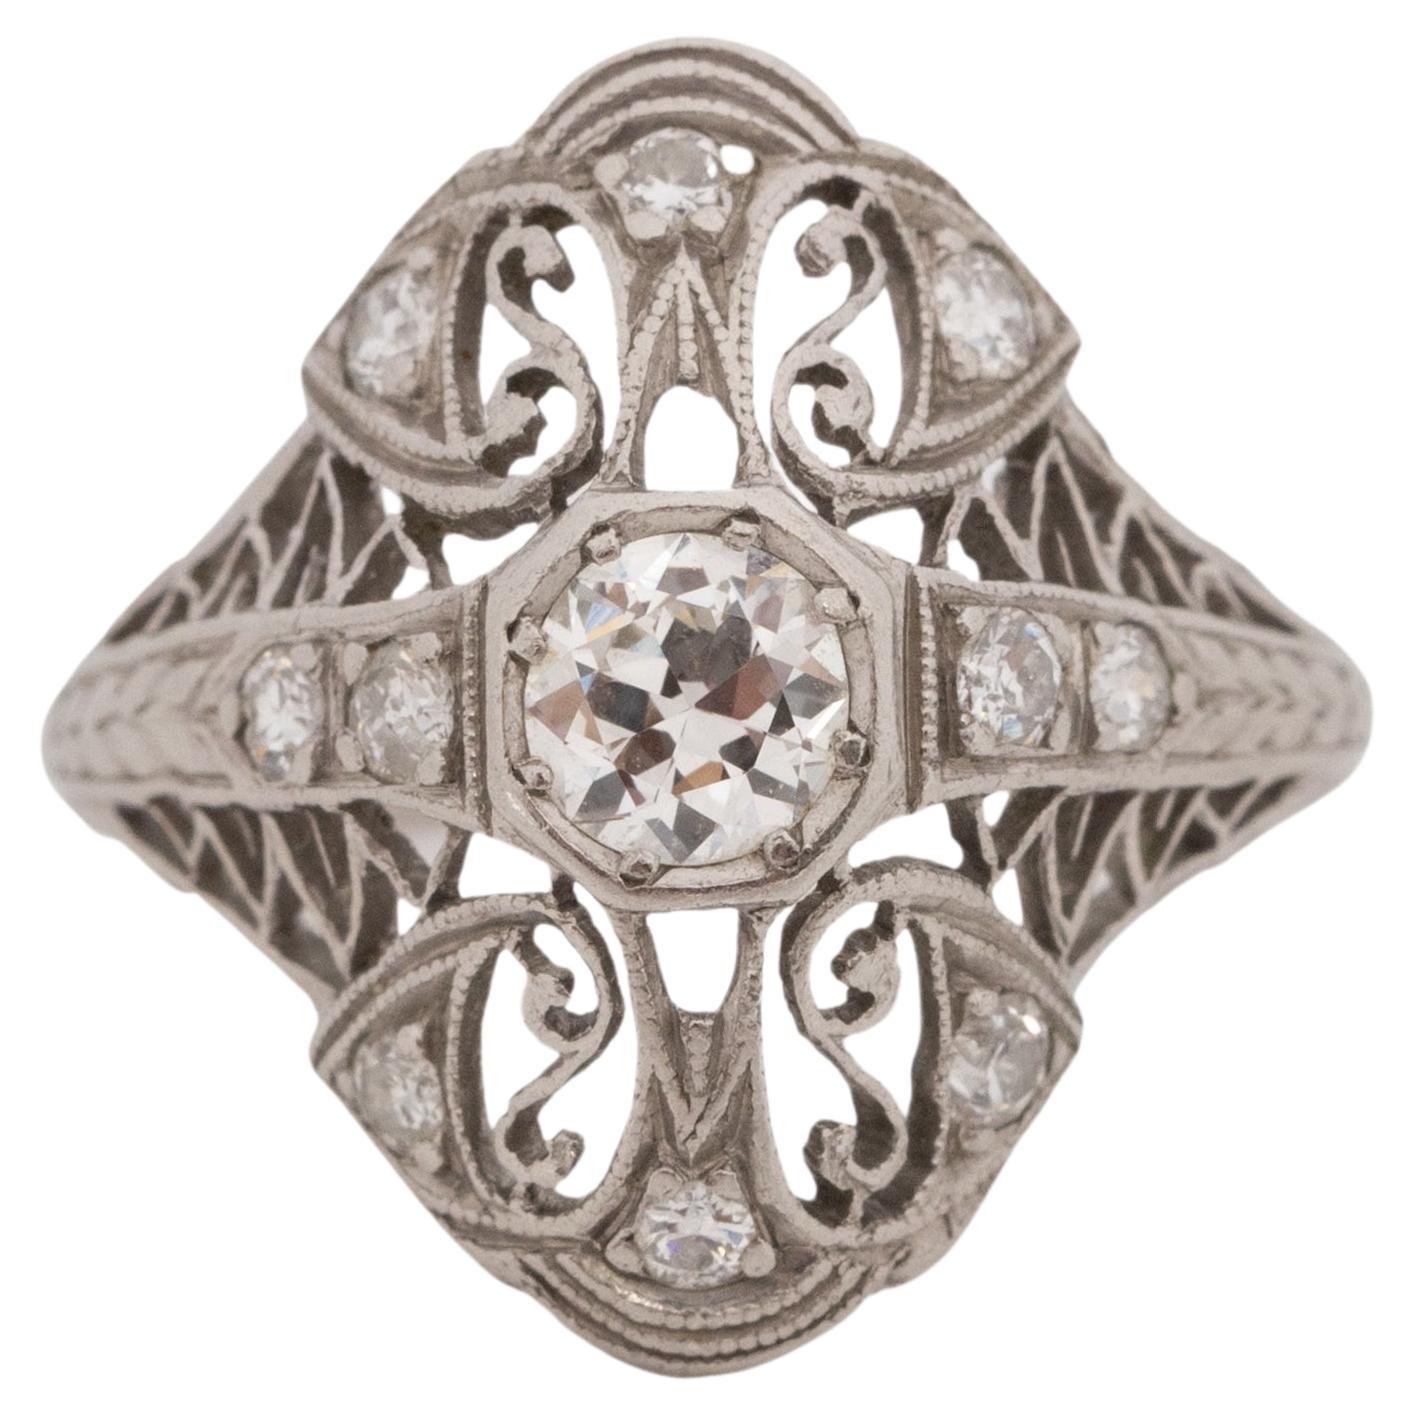 50 Karat Gesamtgewicht Art Deco Diamant Platin Verlobungsring